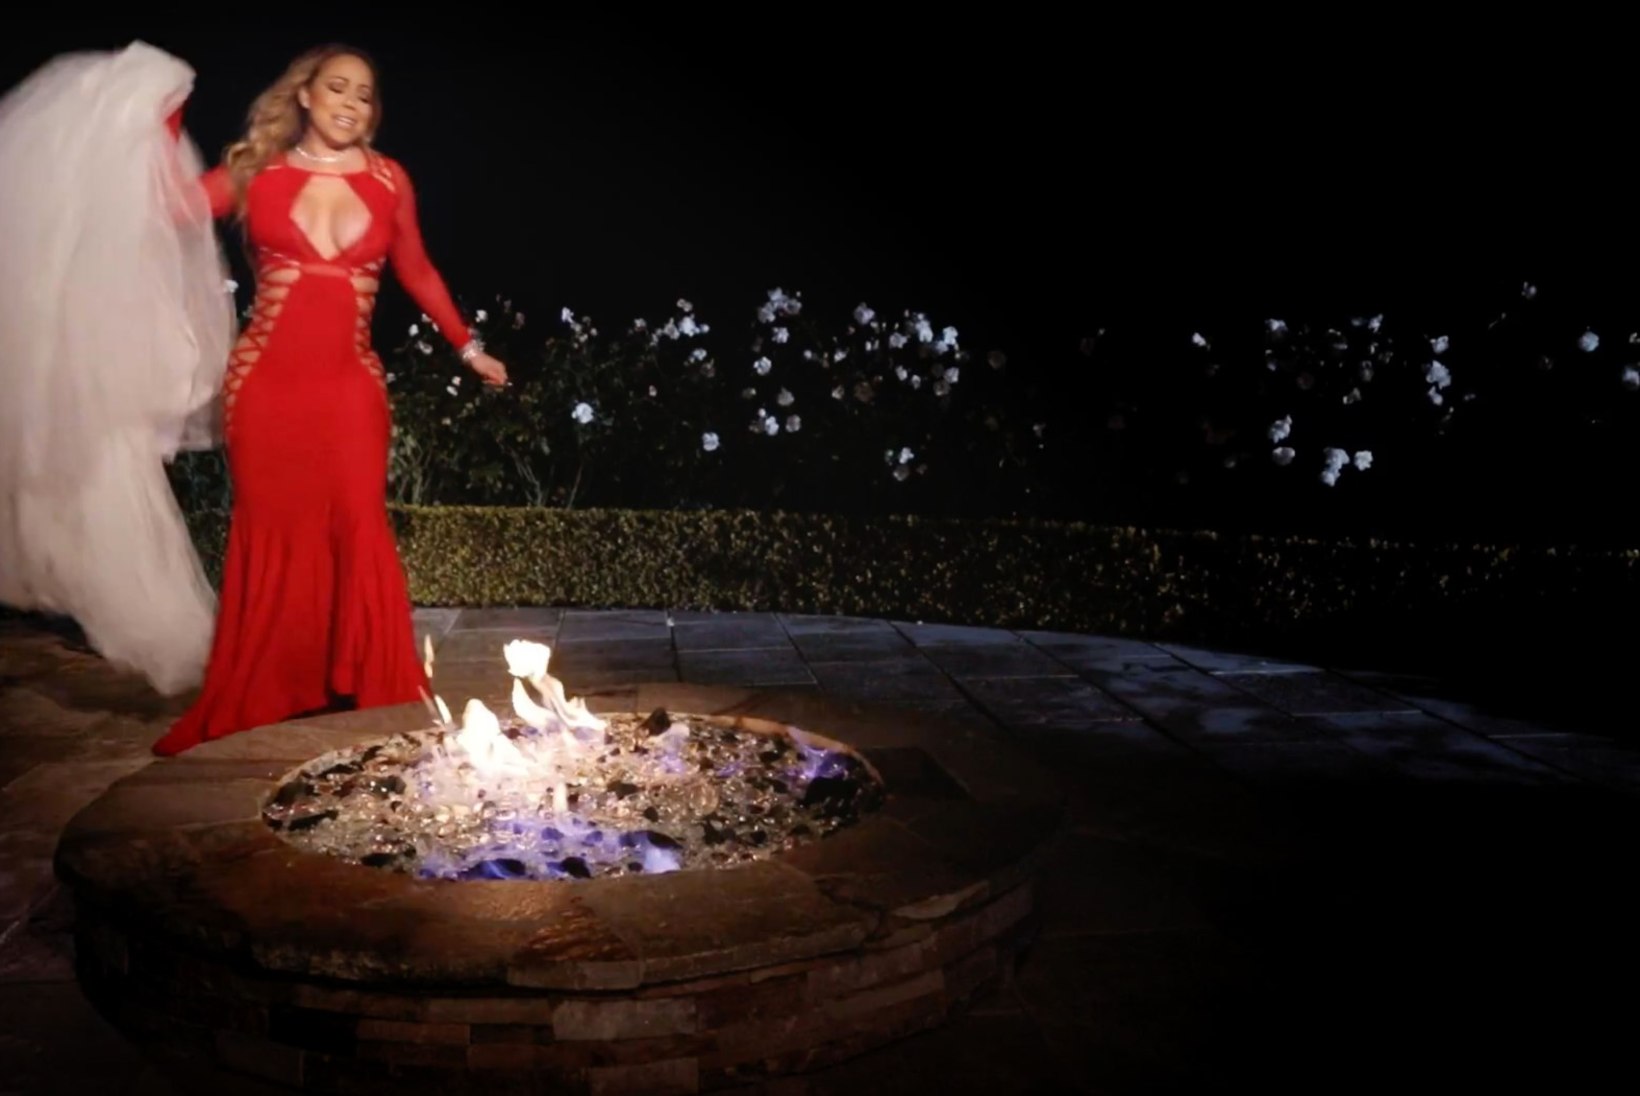 VAATA VIDEOT! Mariah Carey põletab 250 000 dollarit maksva pruutkleidi